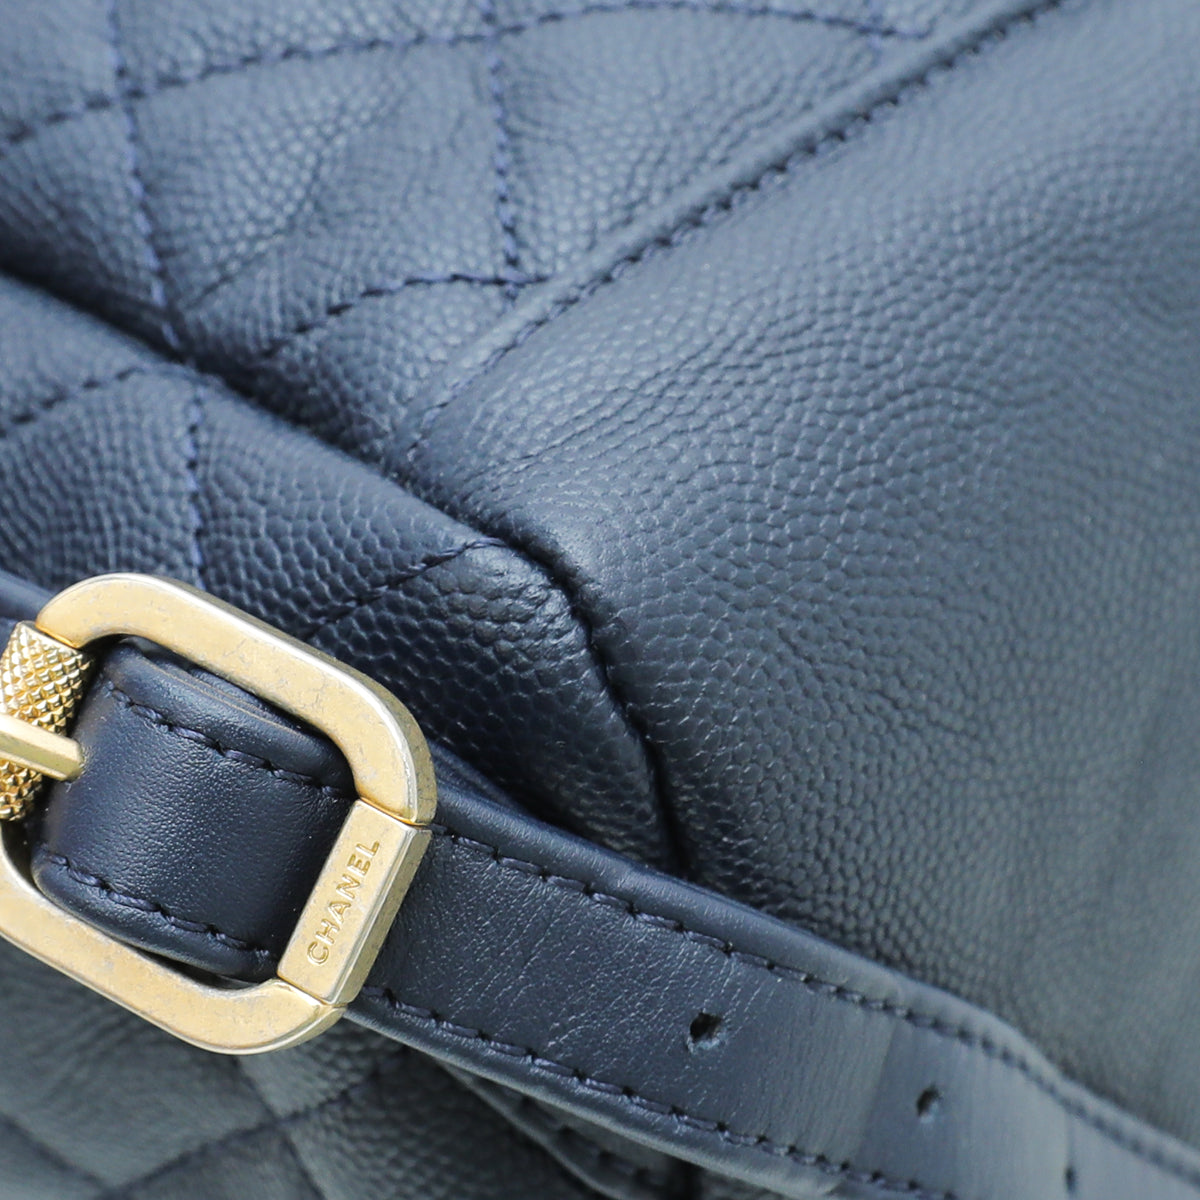 Chanel Navy Blue Filigree Backpack Bag